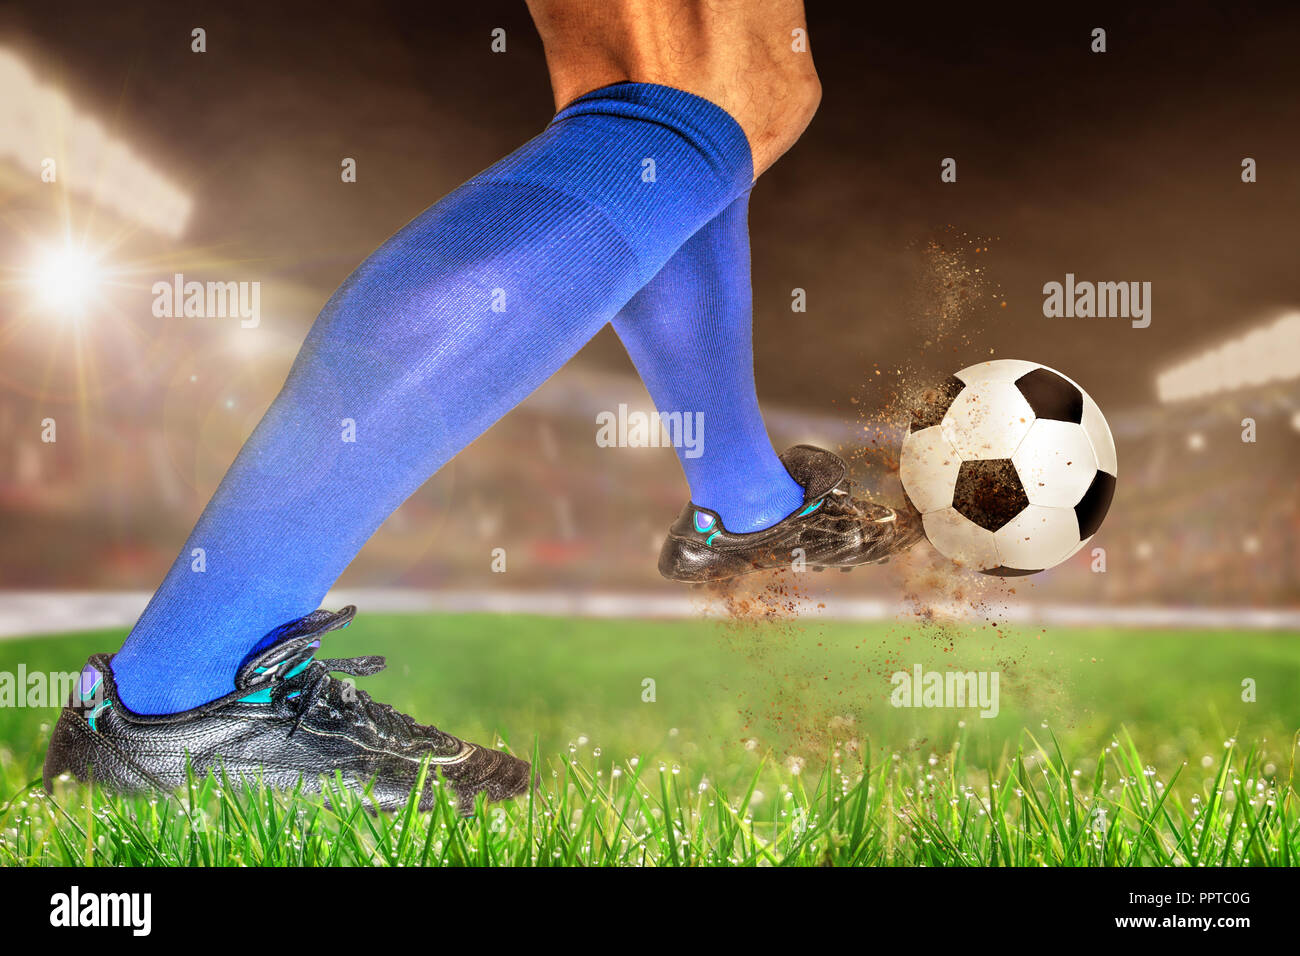 Los zapatos de fútbol de un jugador humano en un campo al estilo de una  paleta de colores brillantes y atrevidos.